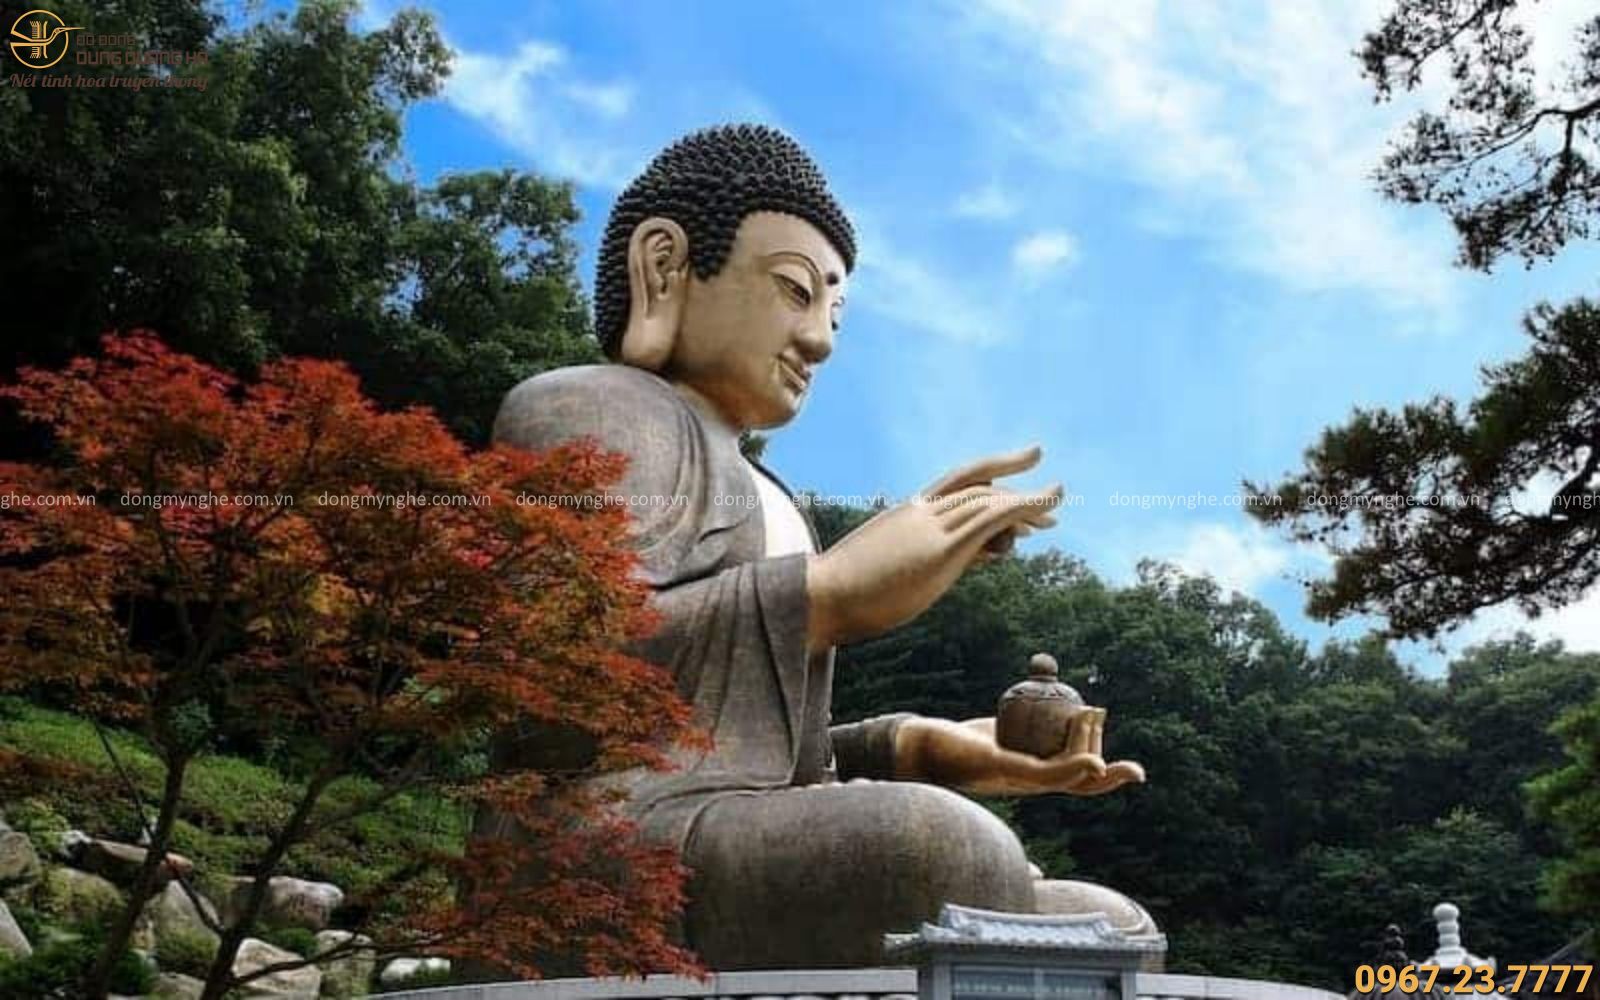 Храм молчание. Буддистский храм Южная Корея. Храм 1000 Будд Южная Корея. Статуя Будды в Южной Корее. День рождения Будды в Южной Корее.